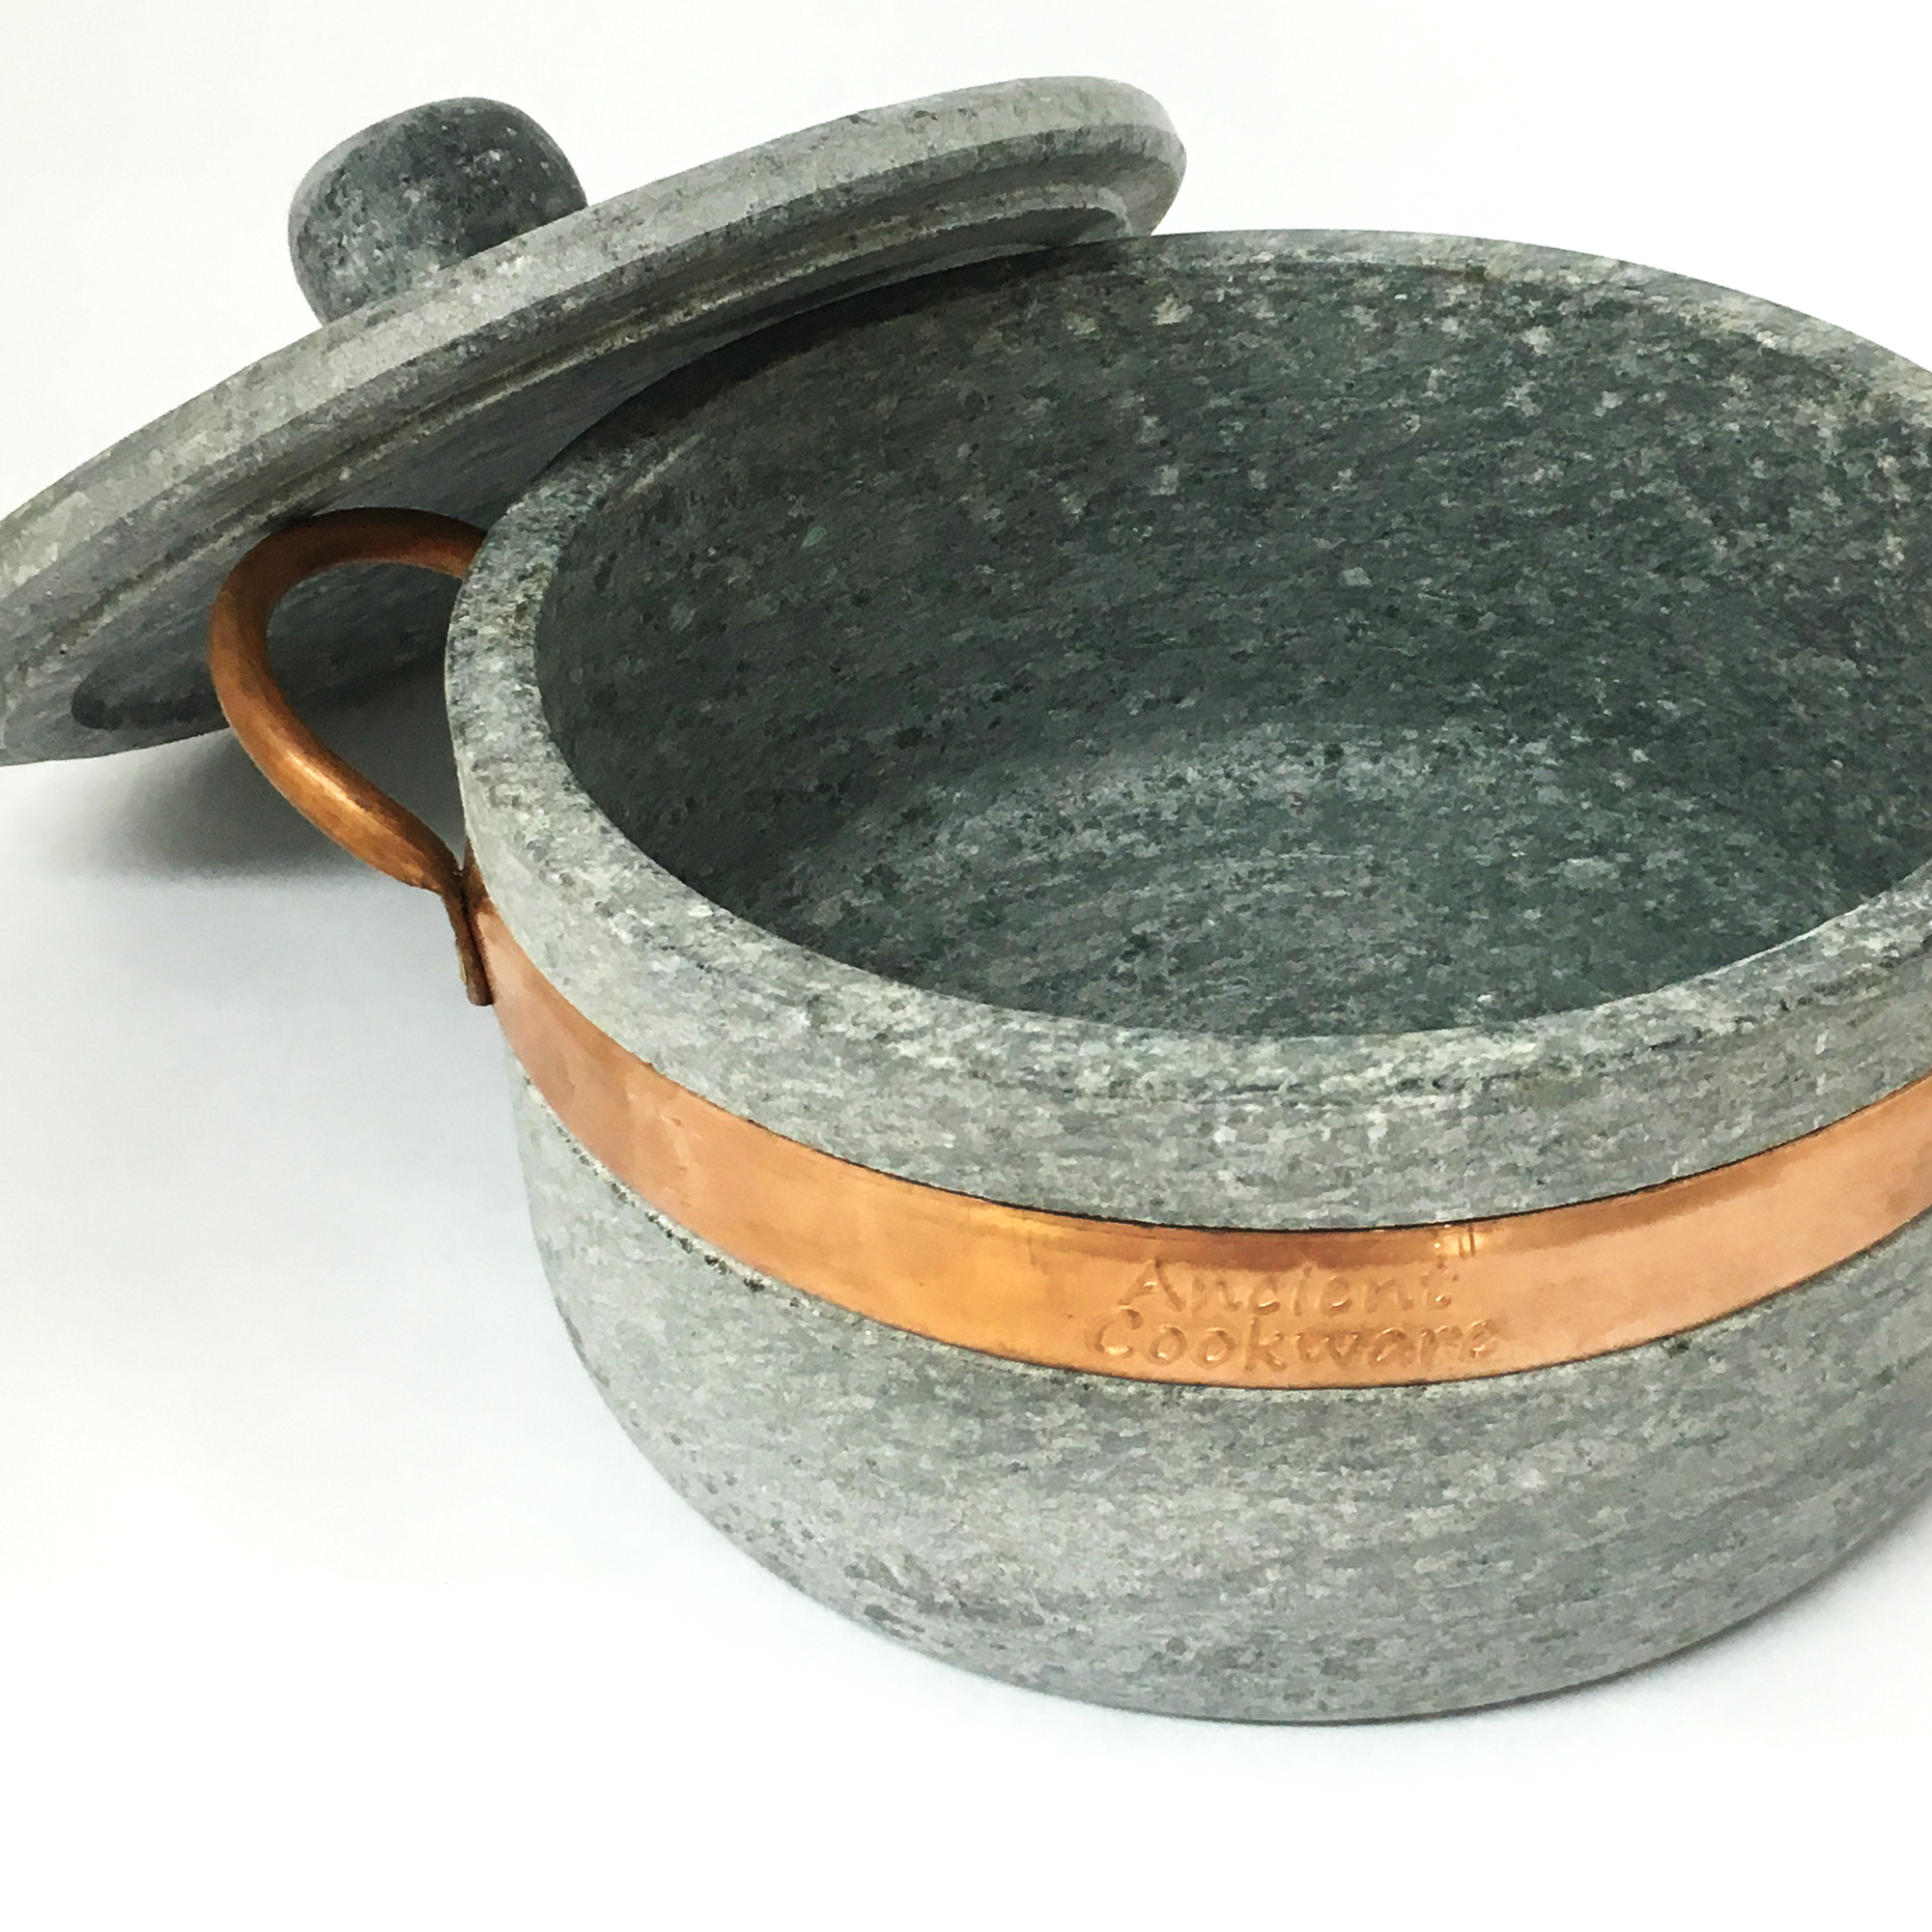 Brazillian Soapstone Pot – Lost & Found